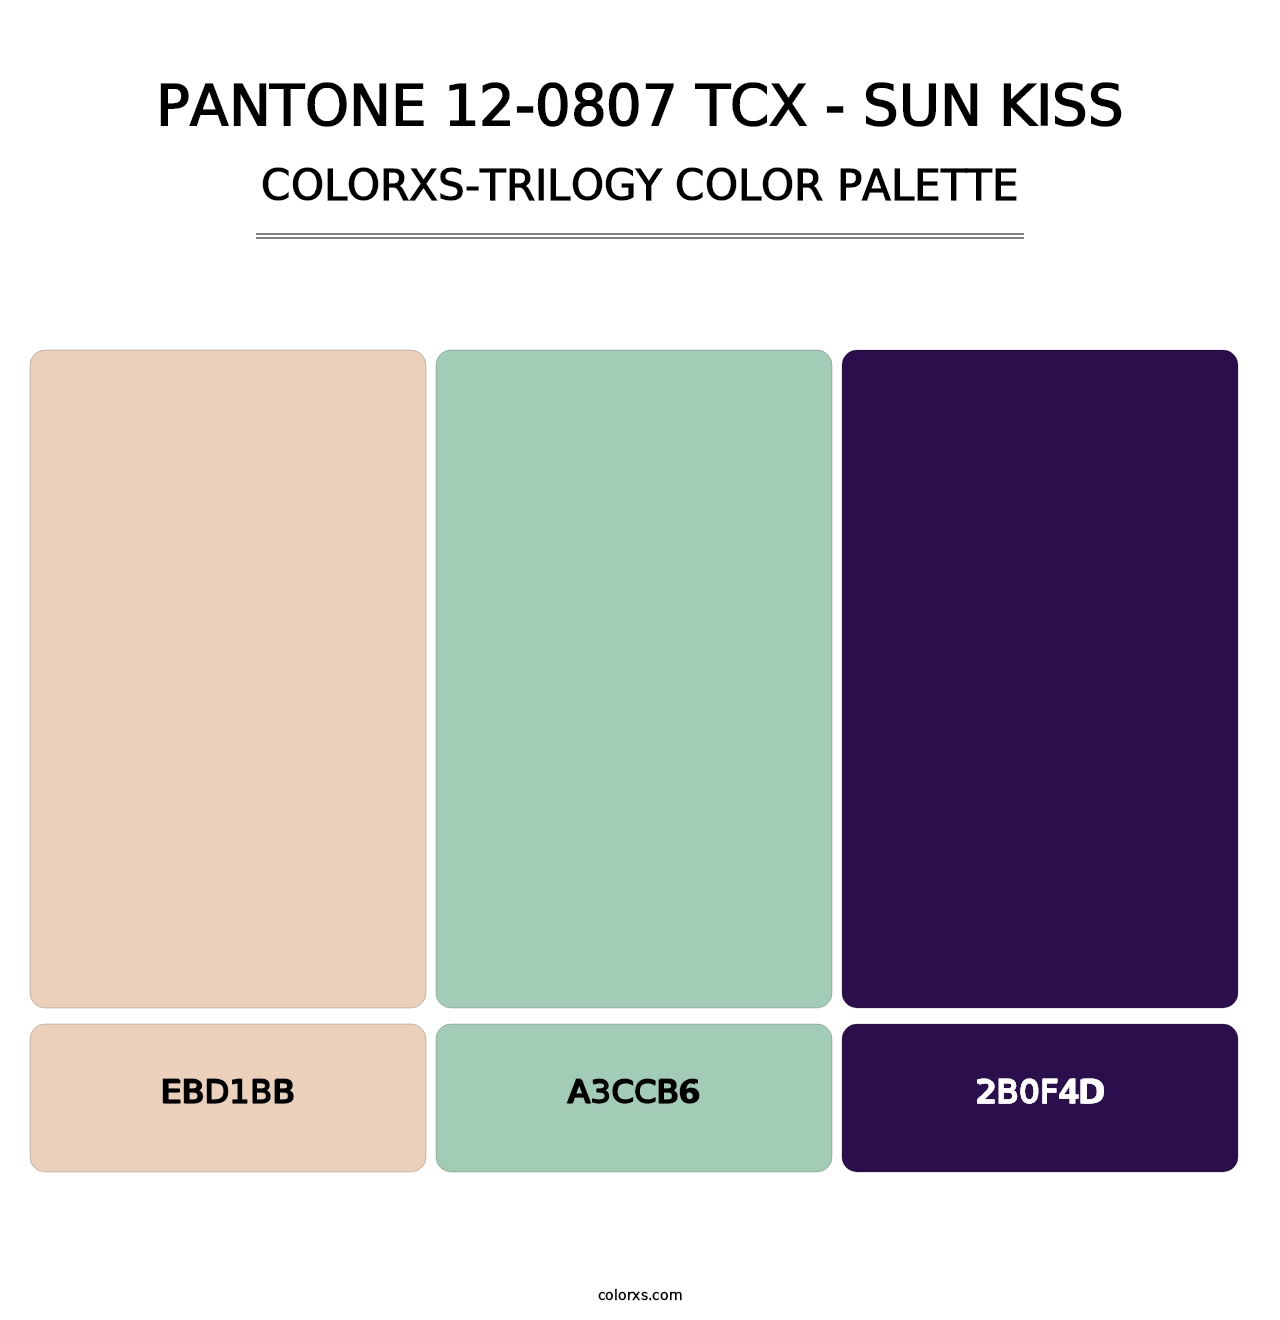 PANTONE 12-0807 TCX - Sun Kiss - Colorxs Trilogy Palette